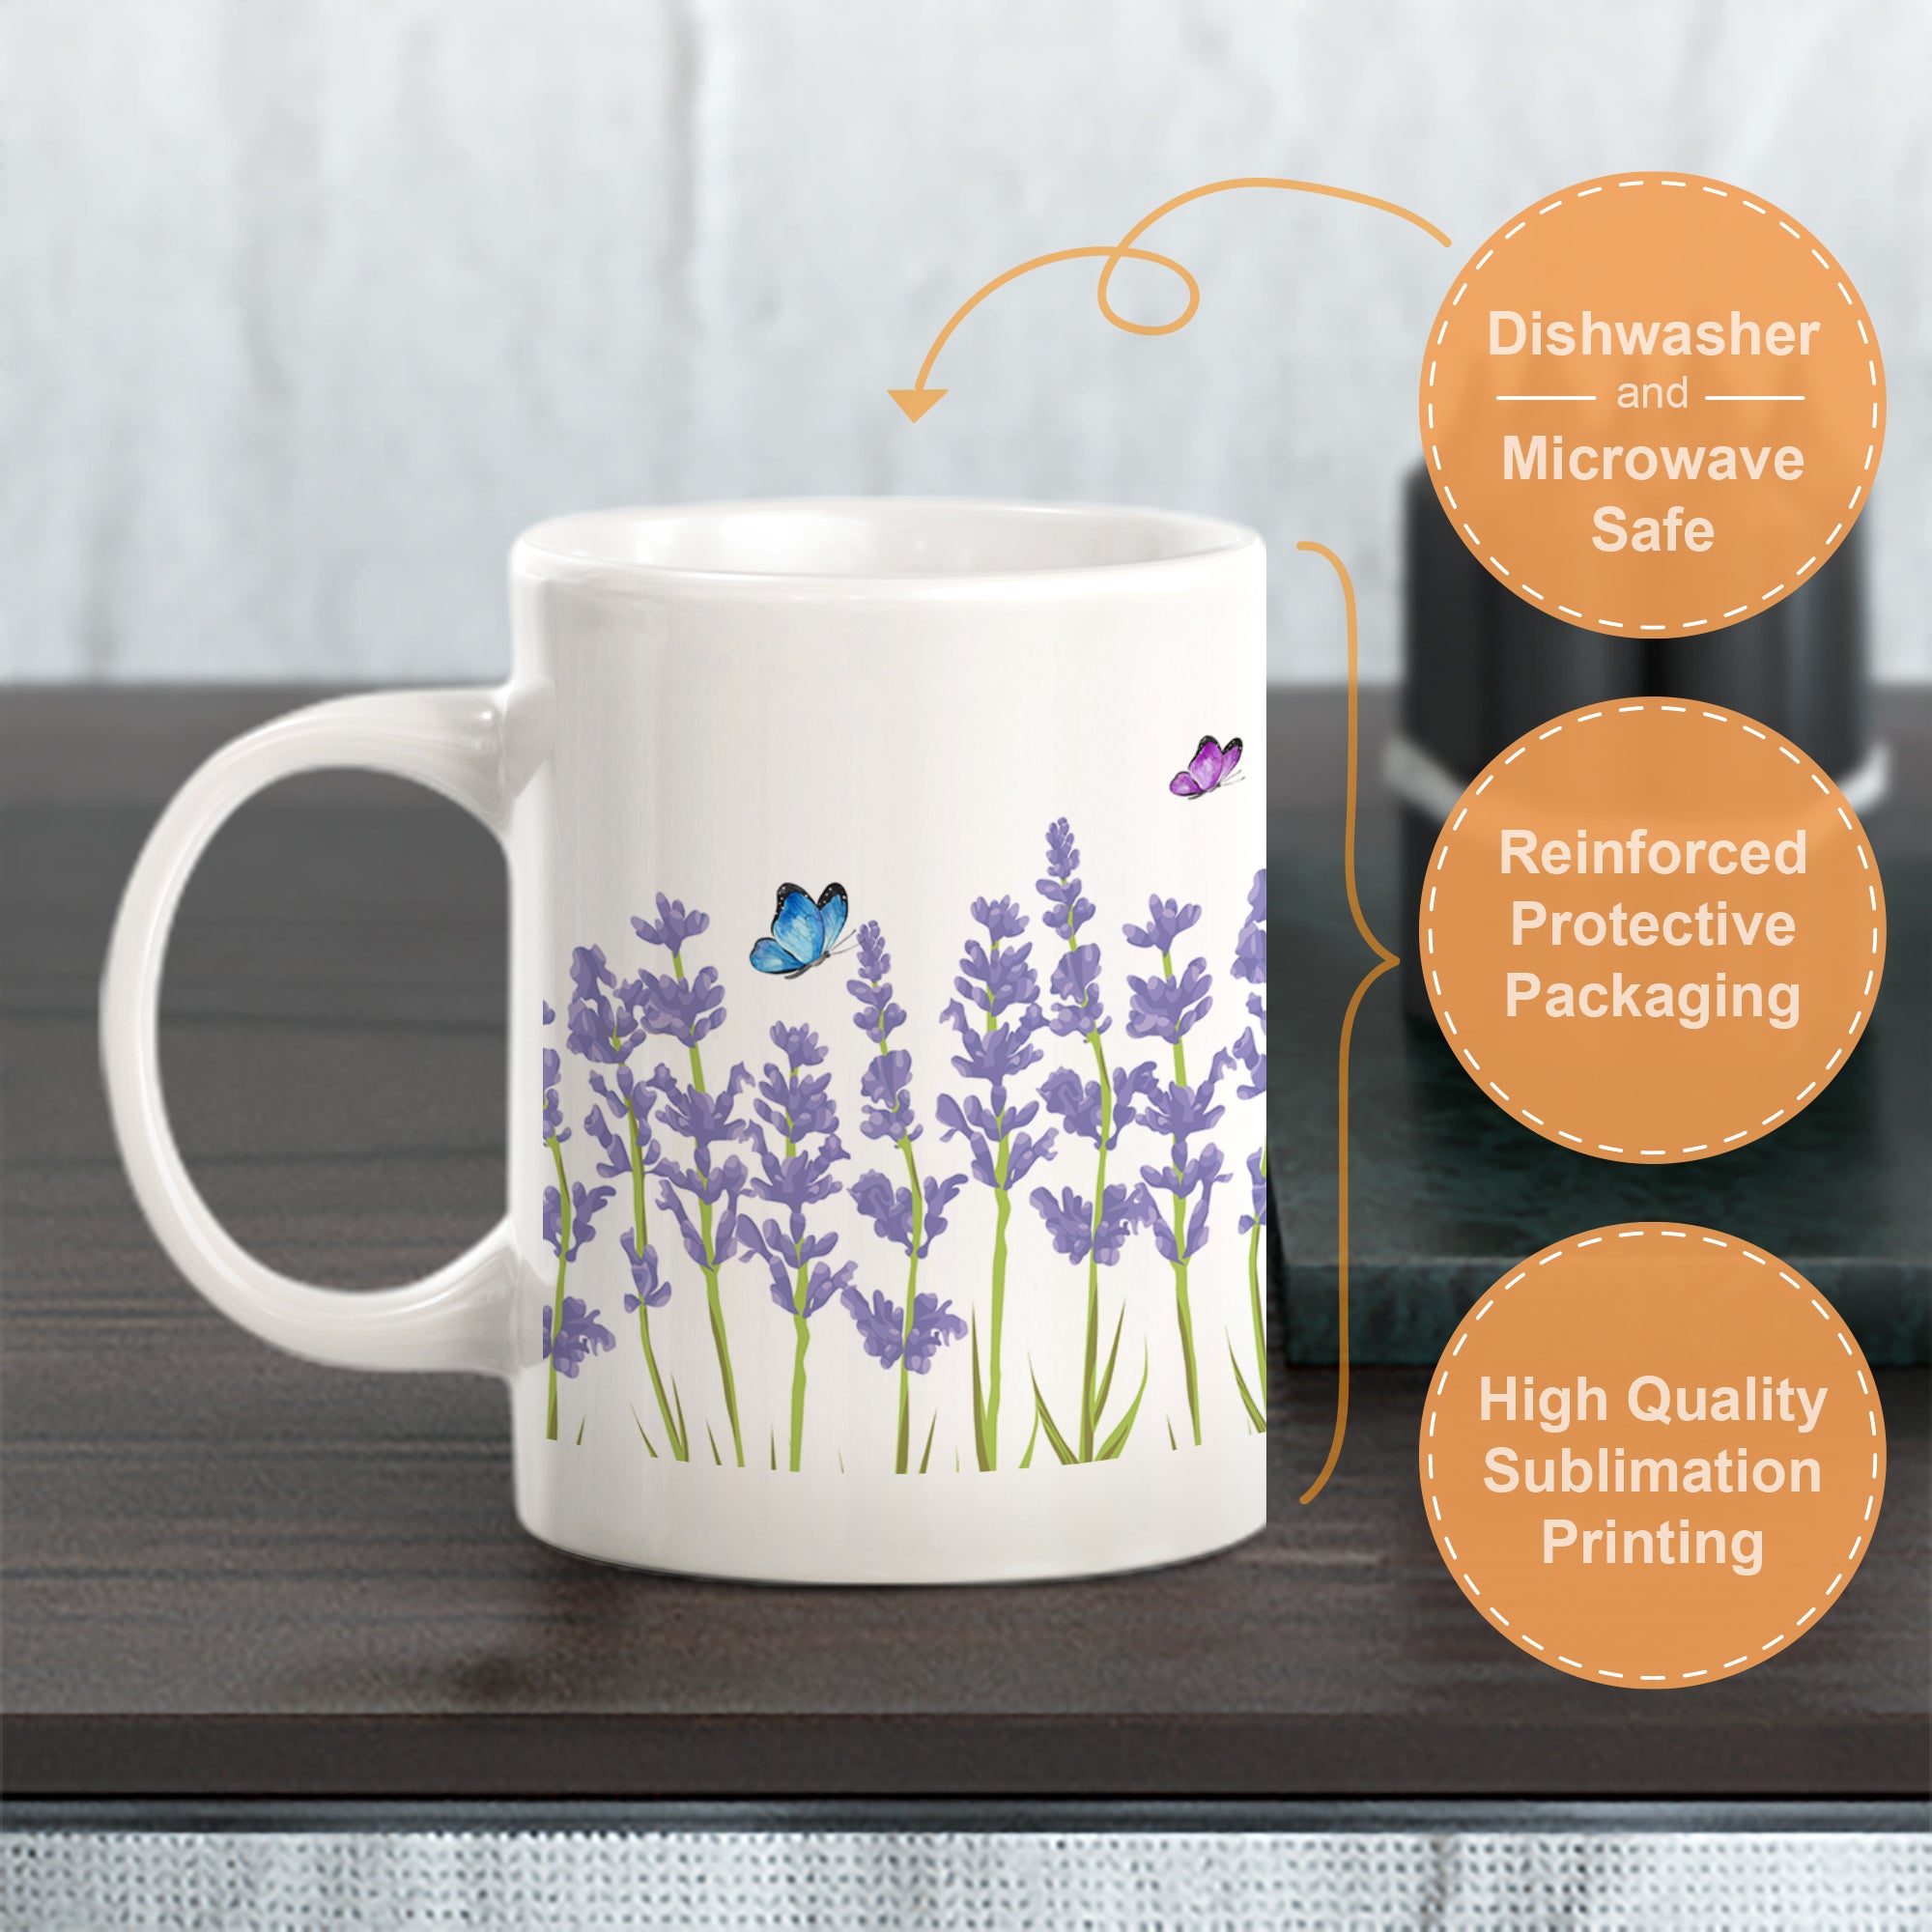 Lavender Coffee Mug